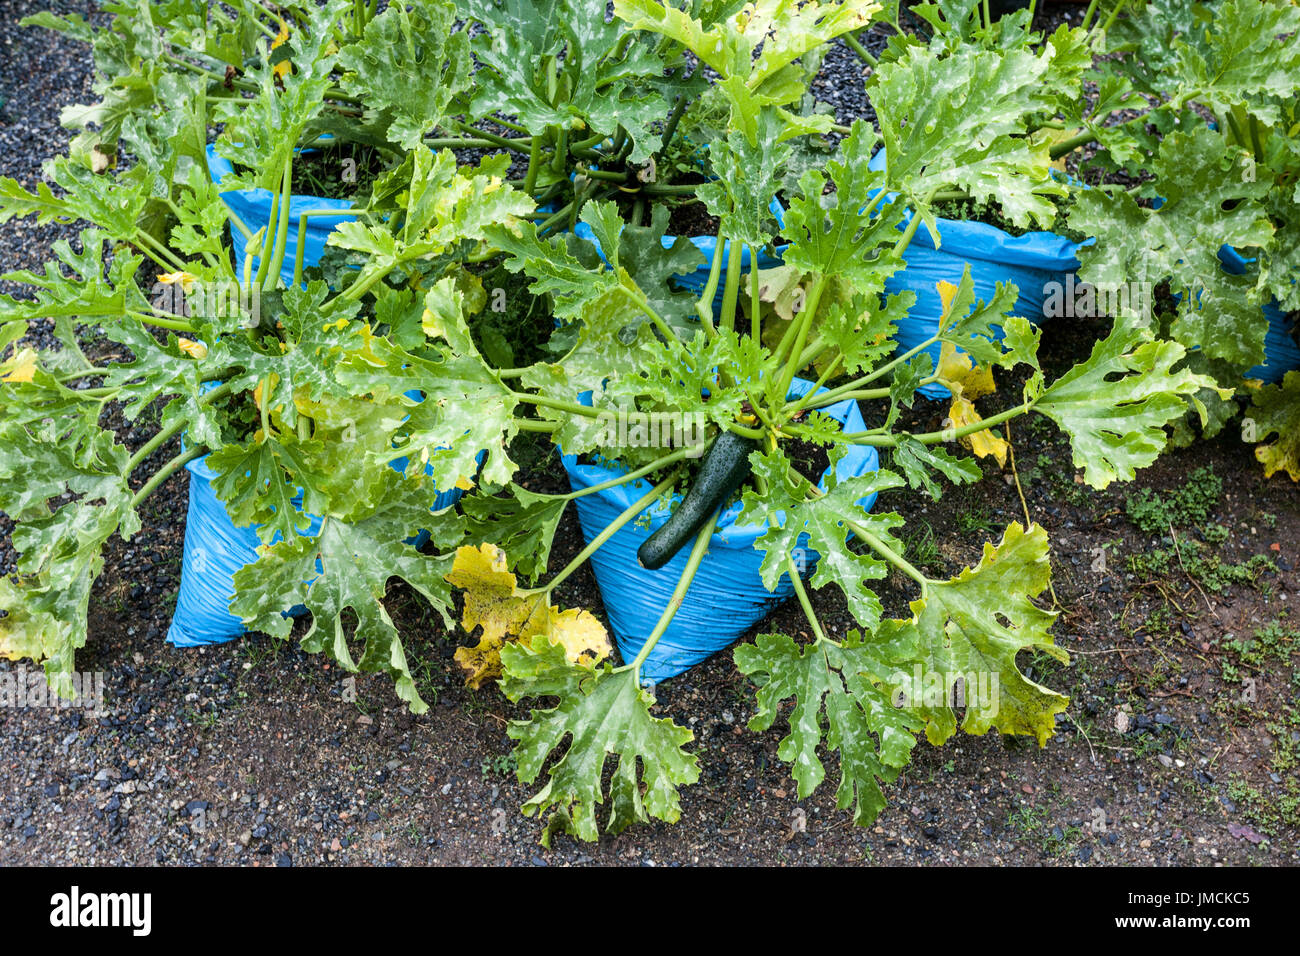 Reifung Zucchini Pflanze wächst in Plastiktüten, Gemüse wachsen Beutel Garten Zucchini Gartenpflanze Stockfoto